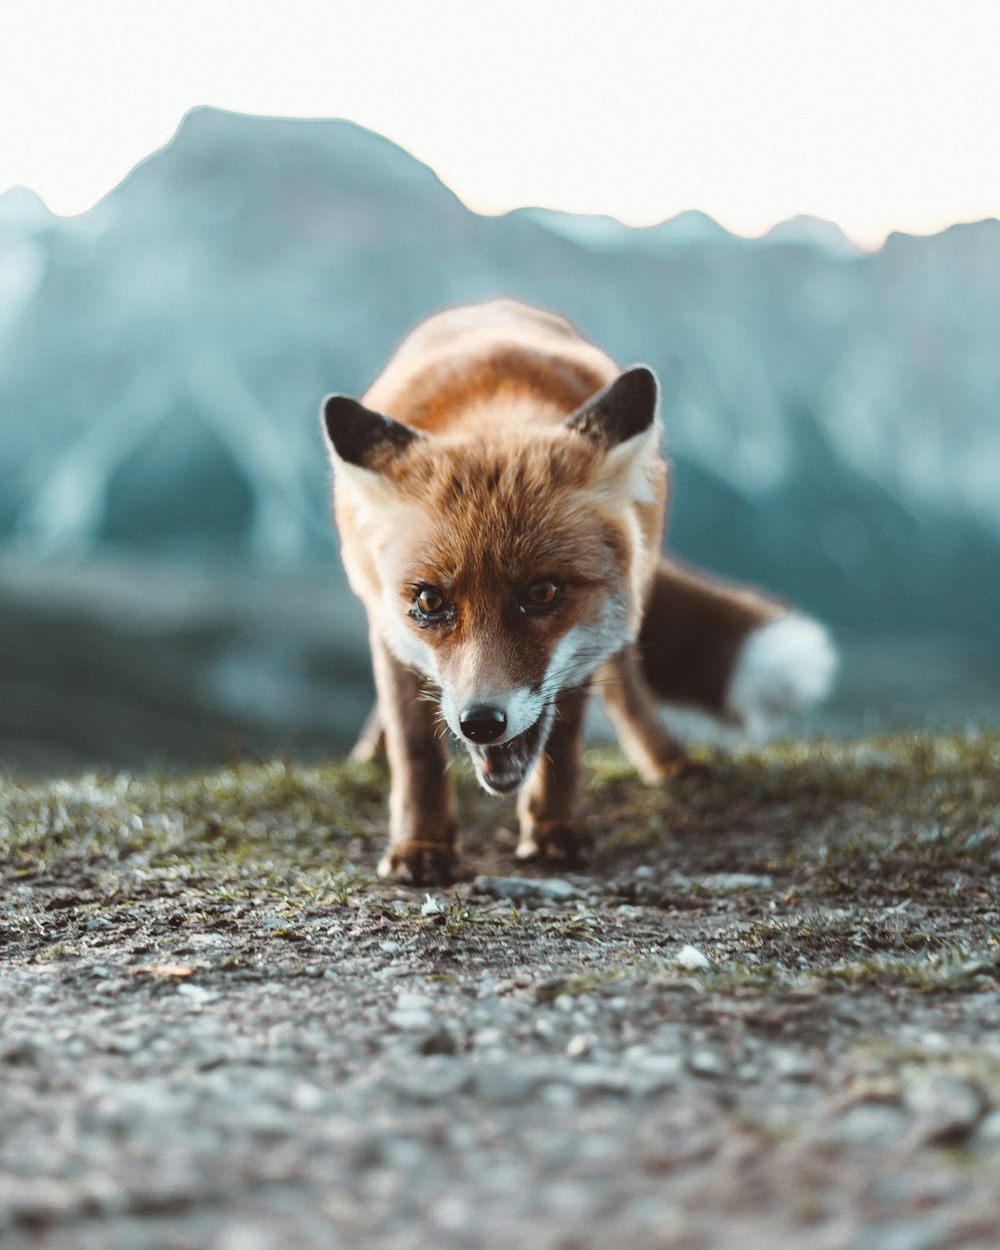 brown fox on black soil during daytime